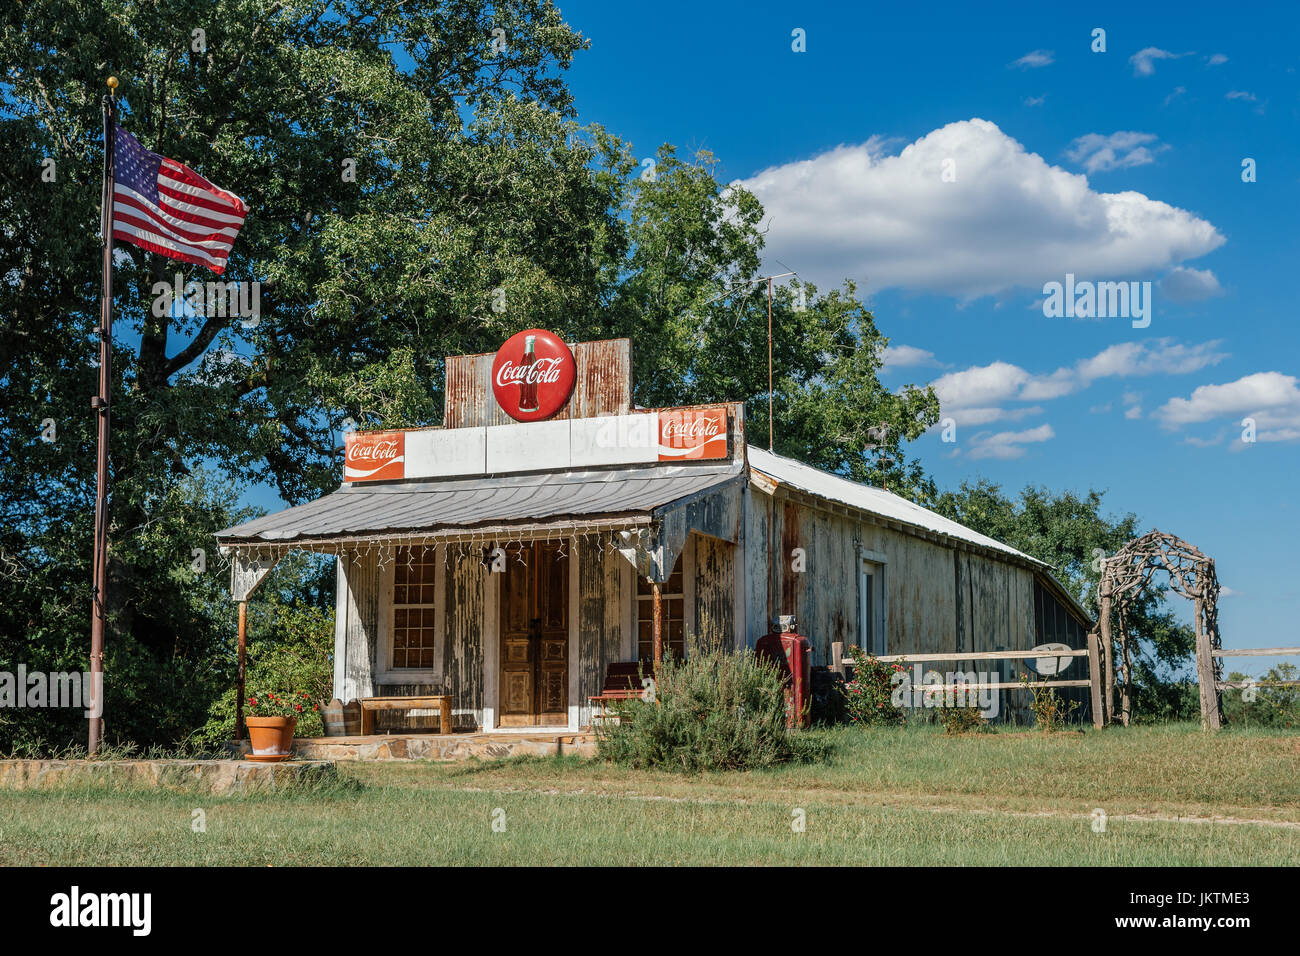 Pequeña tienda rural desde 1900 muestra todavía el viejo estilo de coca-cola signos y enarbolan la bandera americana en la zona rural de Georgia, EE.UU. Foto de stock